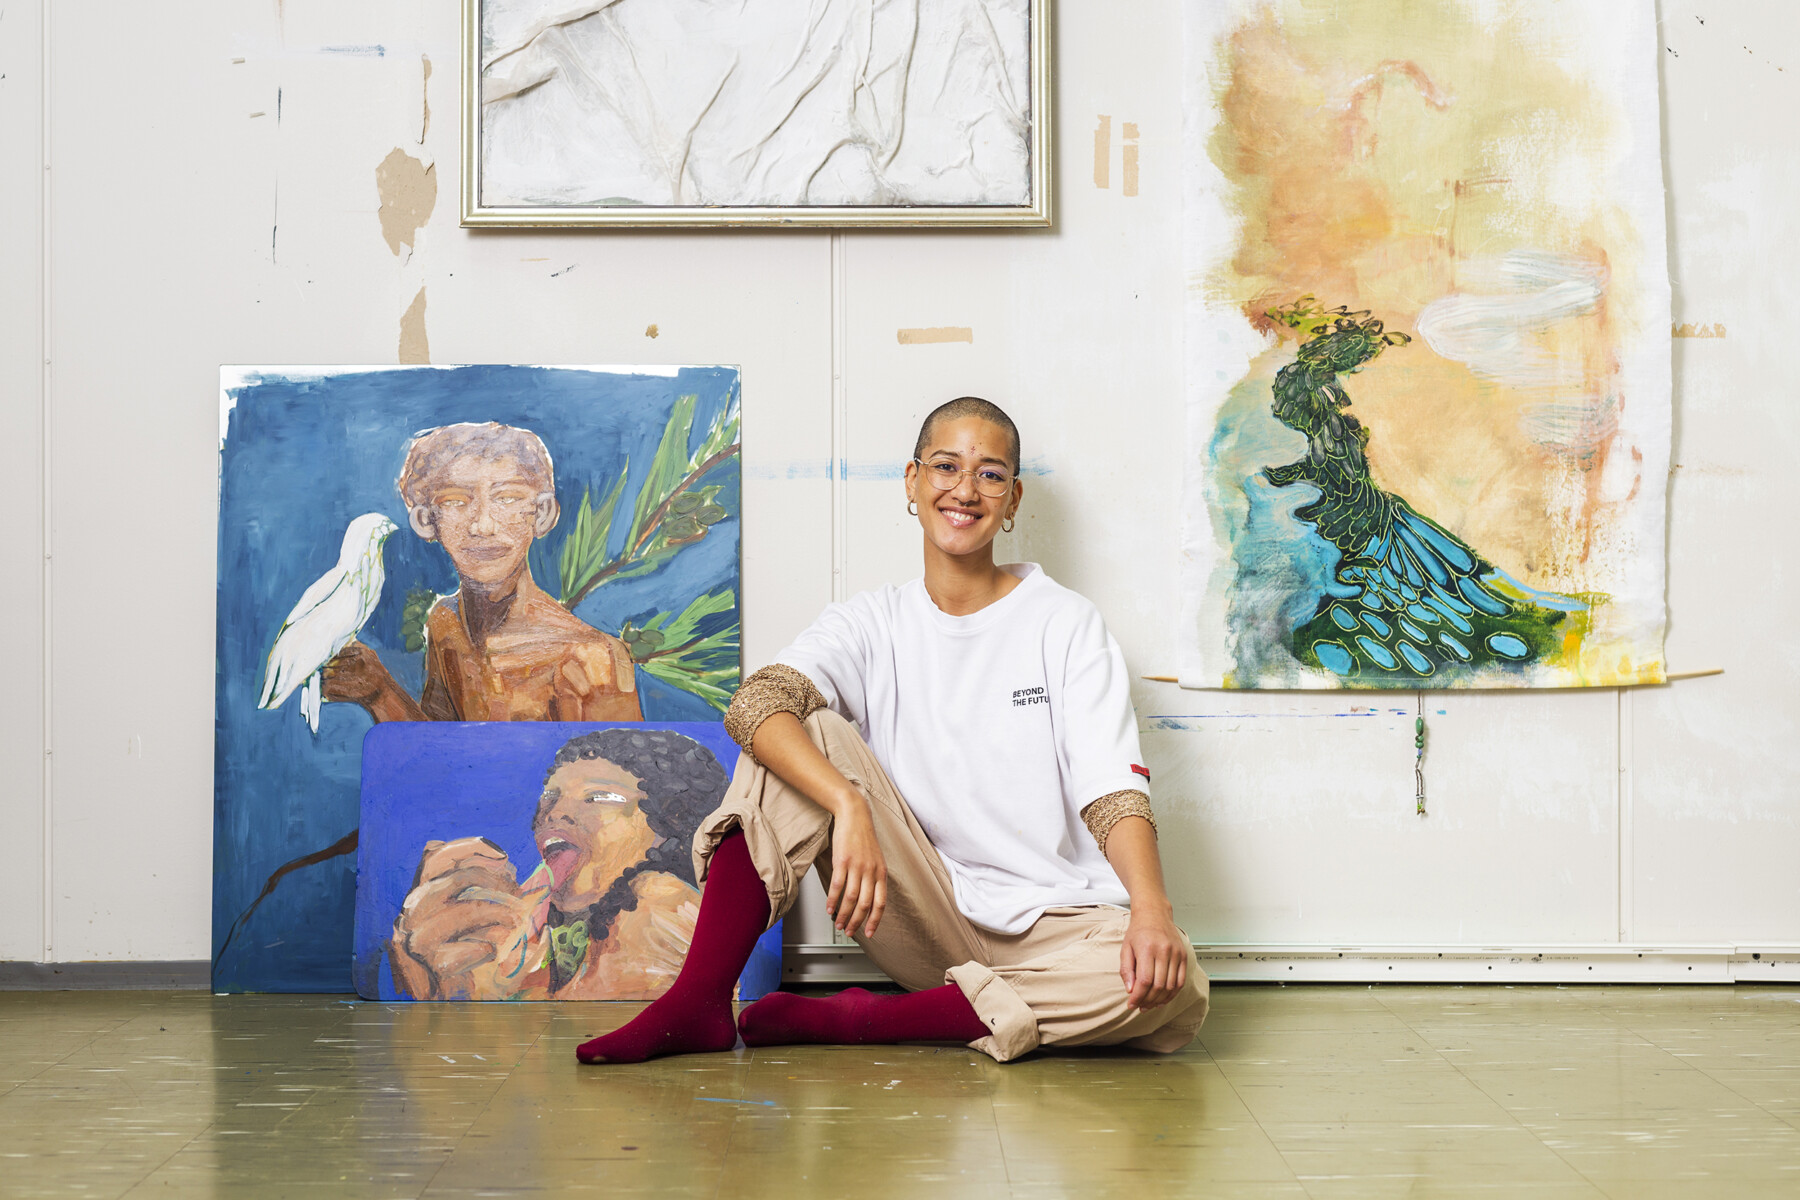 Une personne aux cheveux très courts est assise par terre dans un atelier d’artiste au milieu de tableaux accrochés aux murs. 